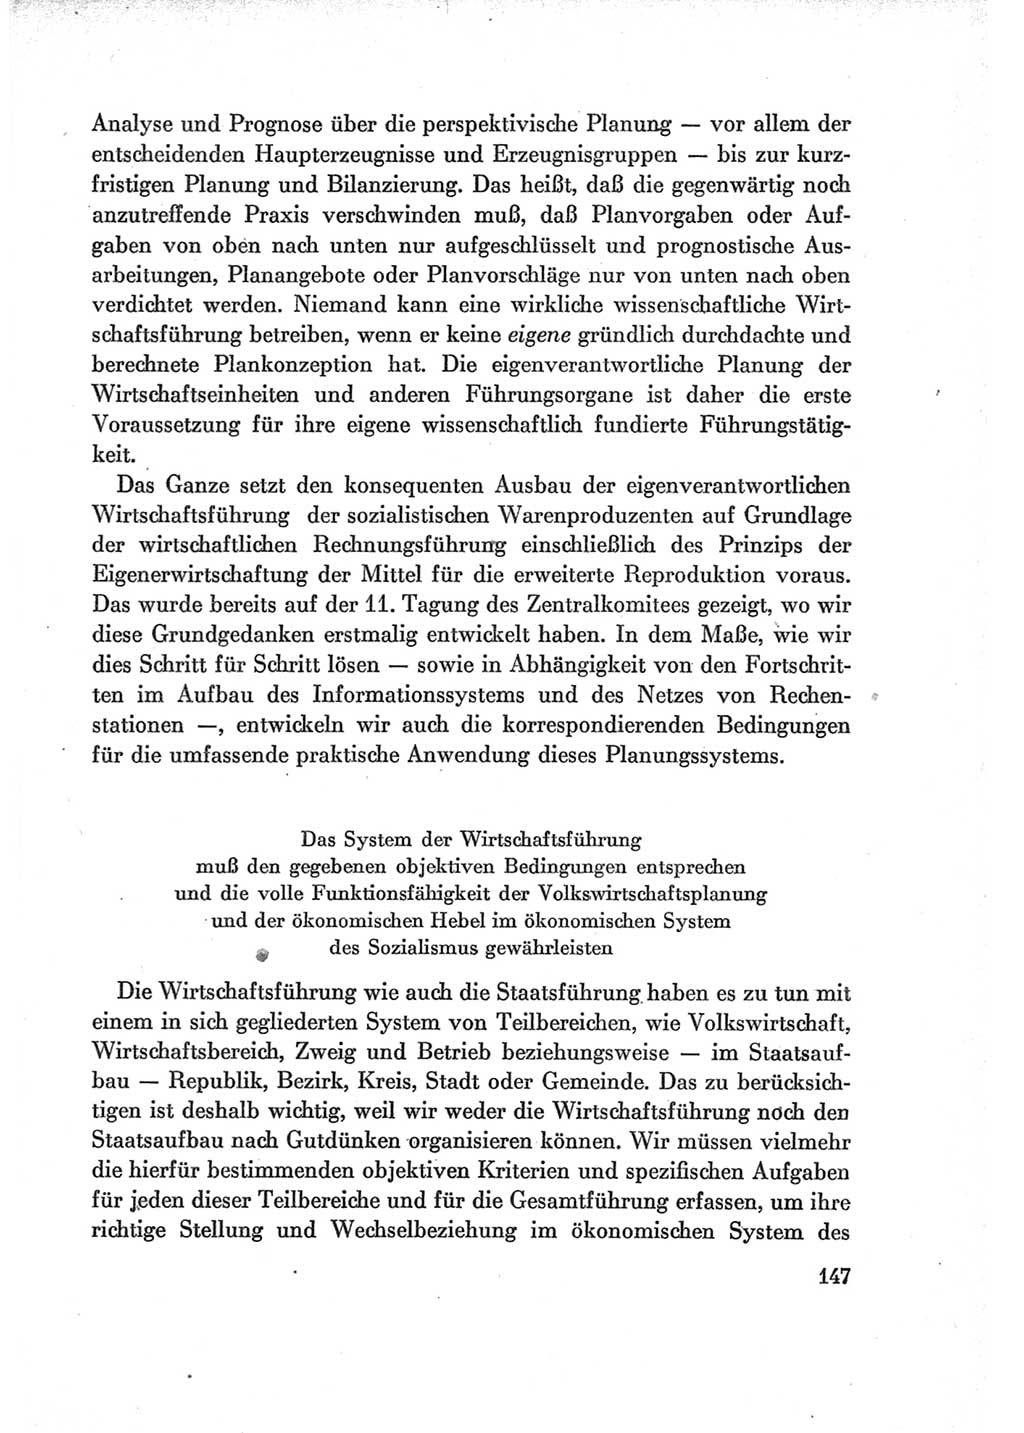 Protokoll der Verhandlungen des Ⅶ. Parteitages der Sozialistischen Einheitspartei Deutschlands (SED) [Deutsche Demokratische Republik (DDR)] 1967, Band Ⅰ, Seite 147 (Prot. Verh. Ⅶ. PT SED DDR 1967, Bd. Ⅰ, S. 147)